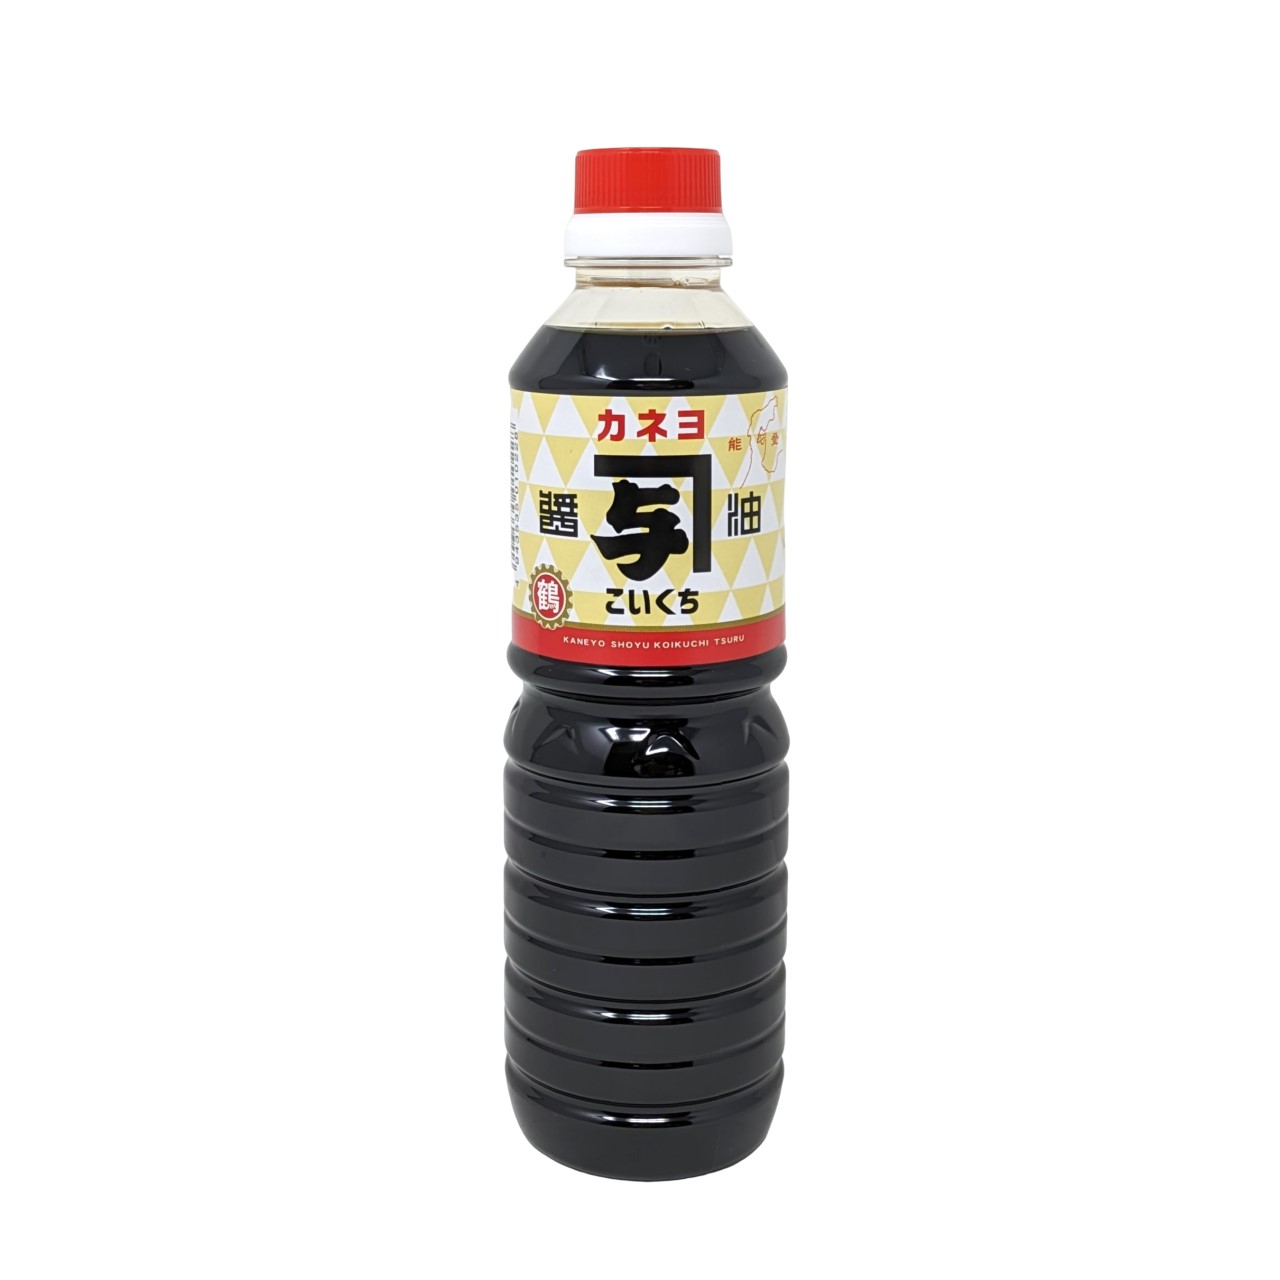 【送料無料】500mlペット 濃口しょうゆ 醤油...の商品画像